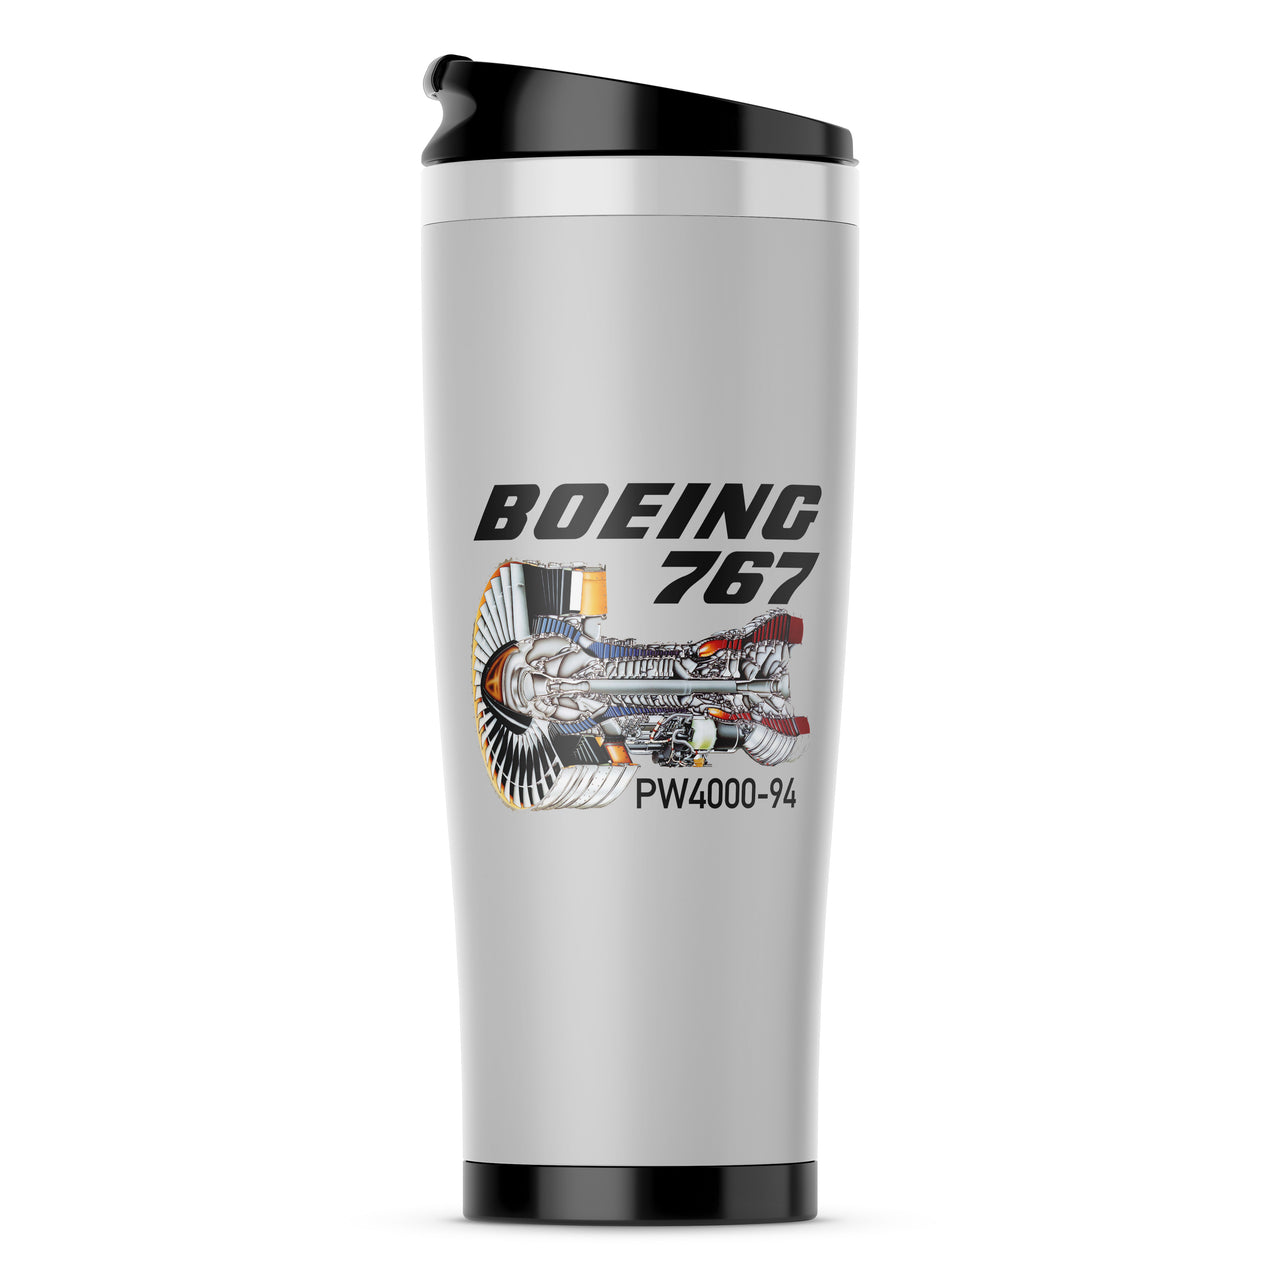 Boeing 767 Engine (PW4000-94) Designed Travel Mugs